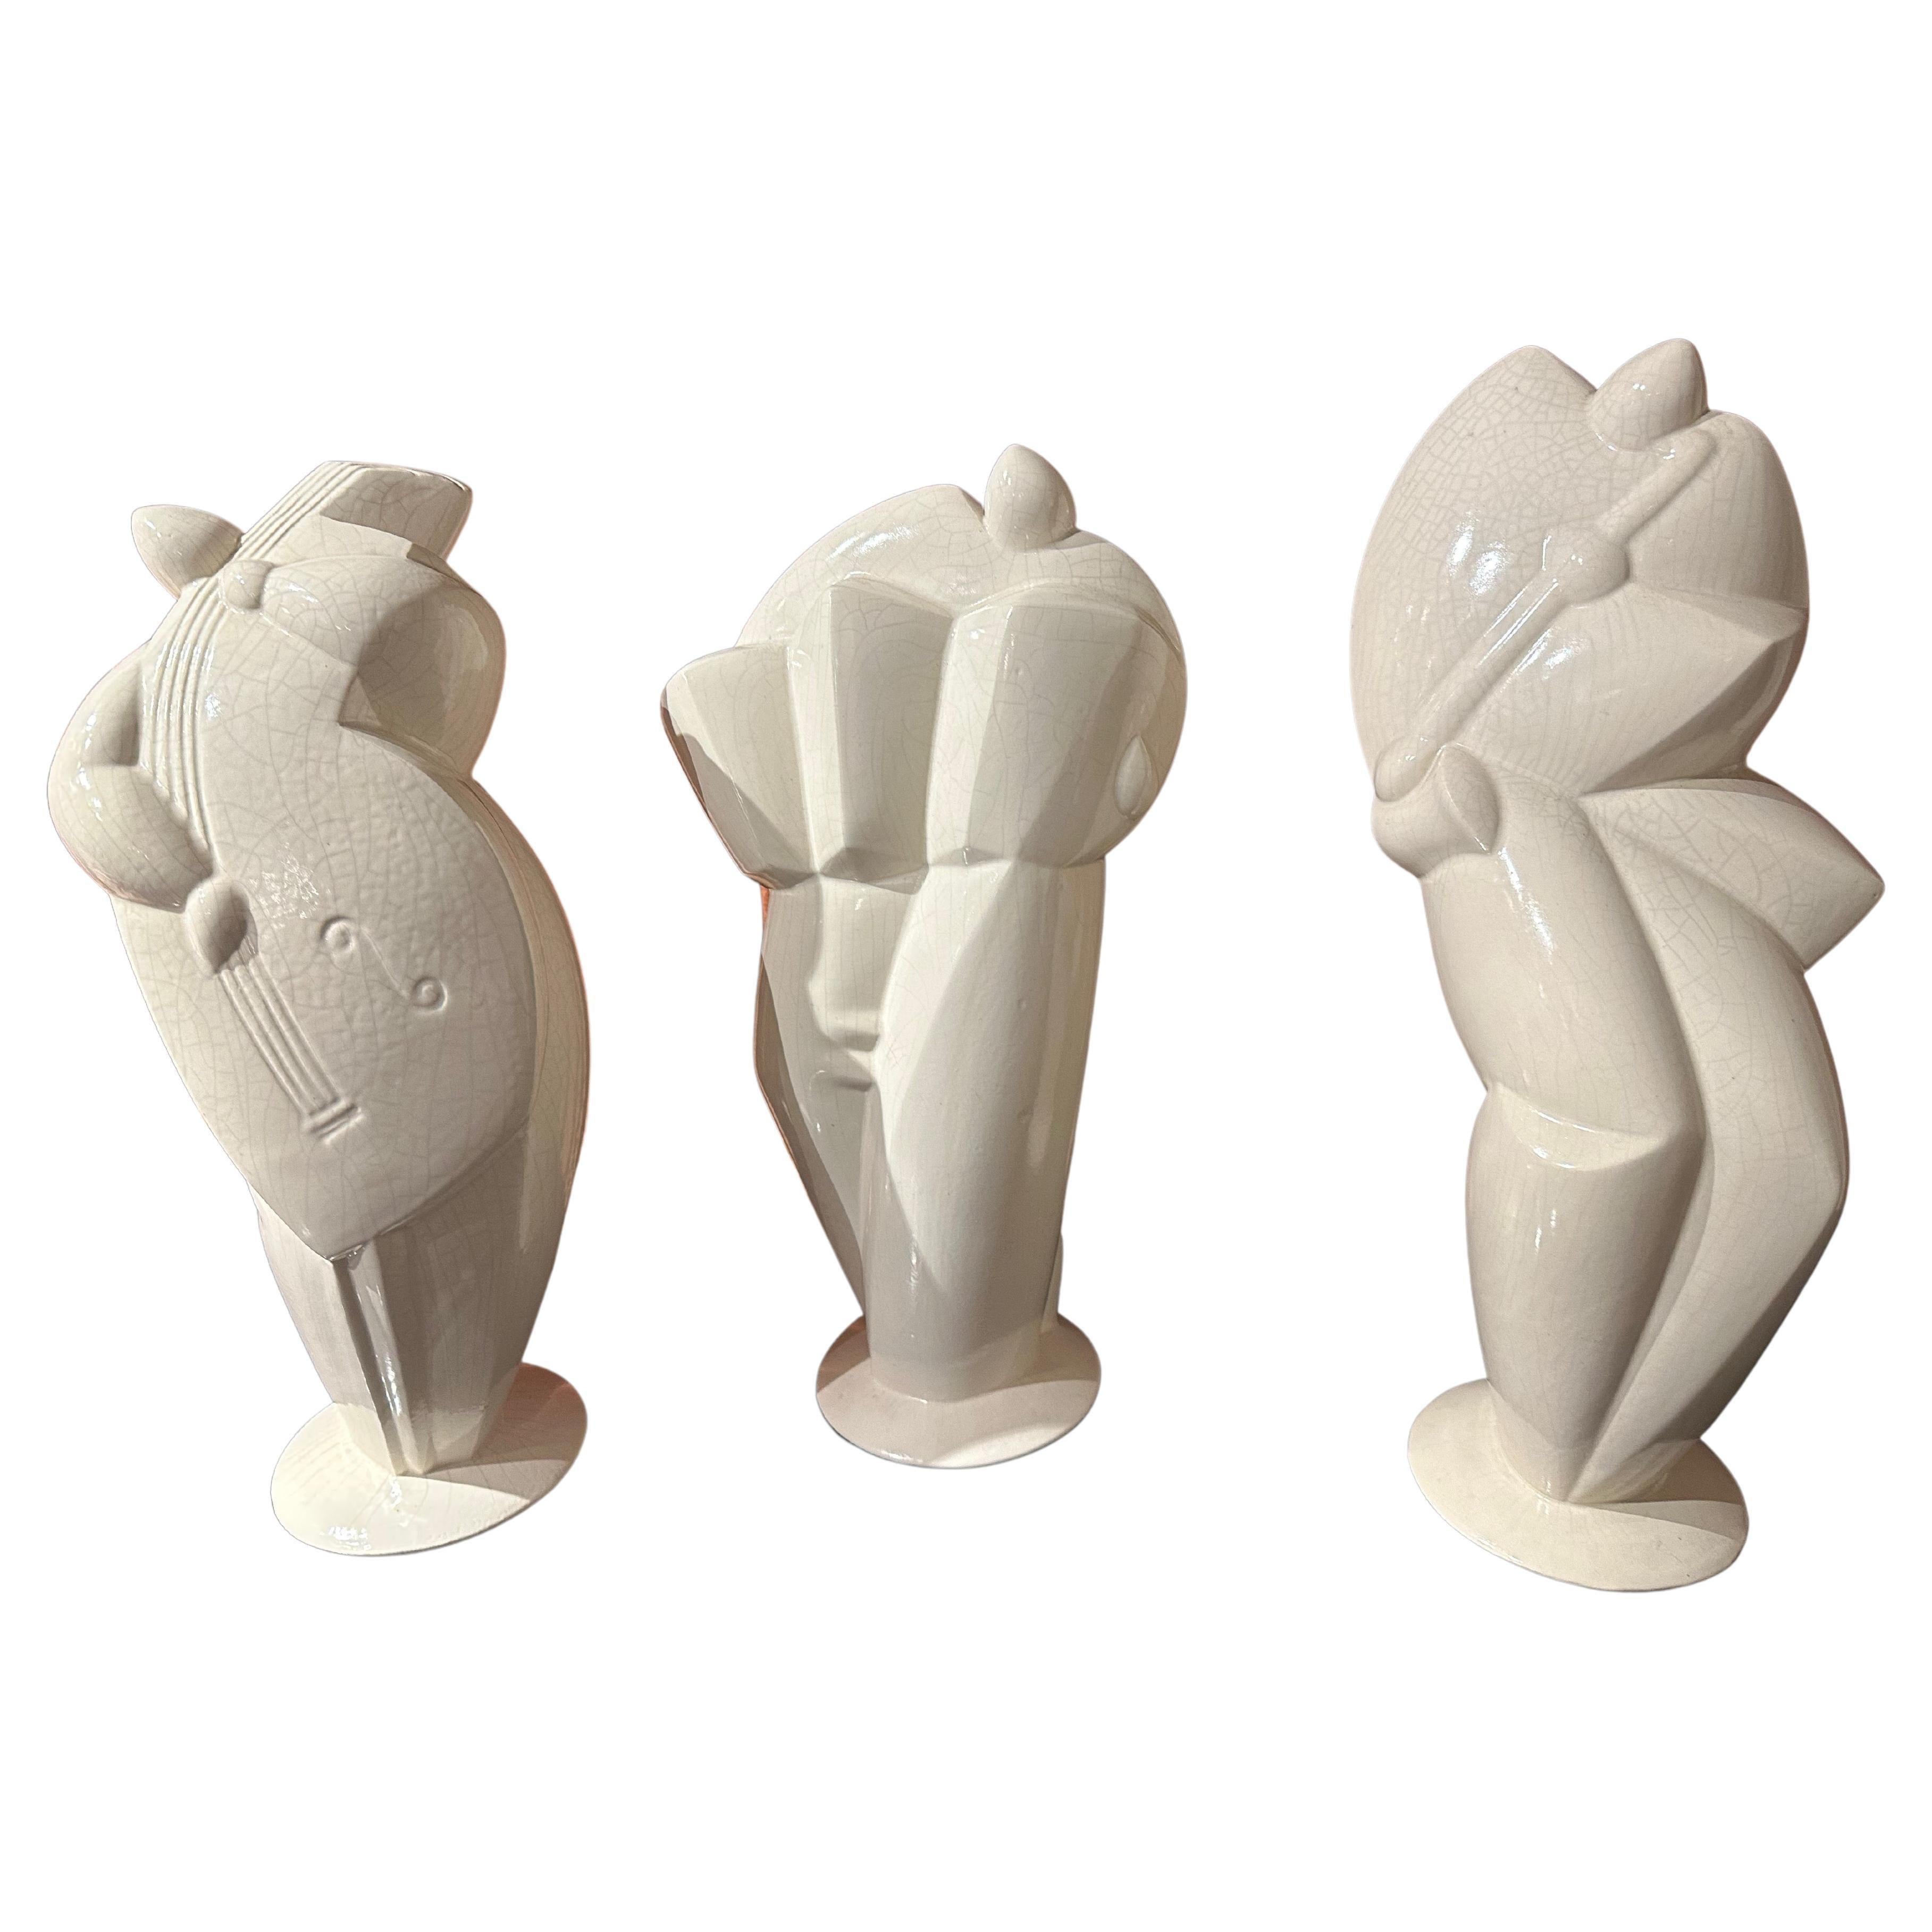 Figurative Sculpture Unknown - 3 grandes sculptures en céramique de style Art déco cubiste représentant des musiciens